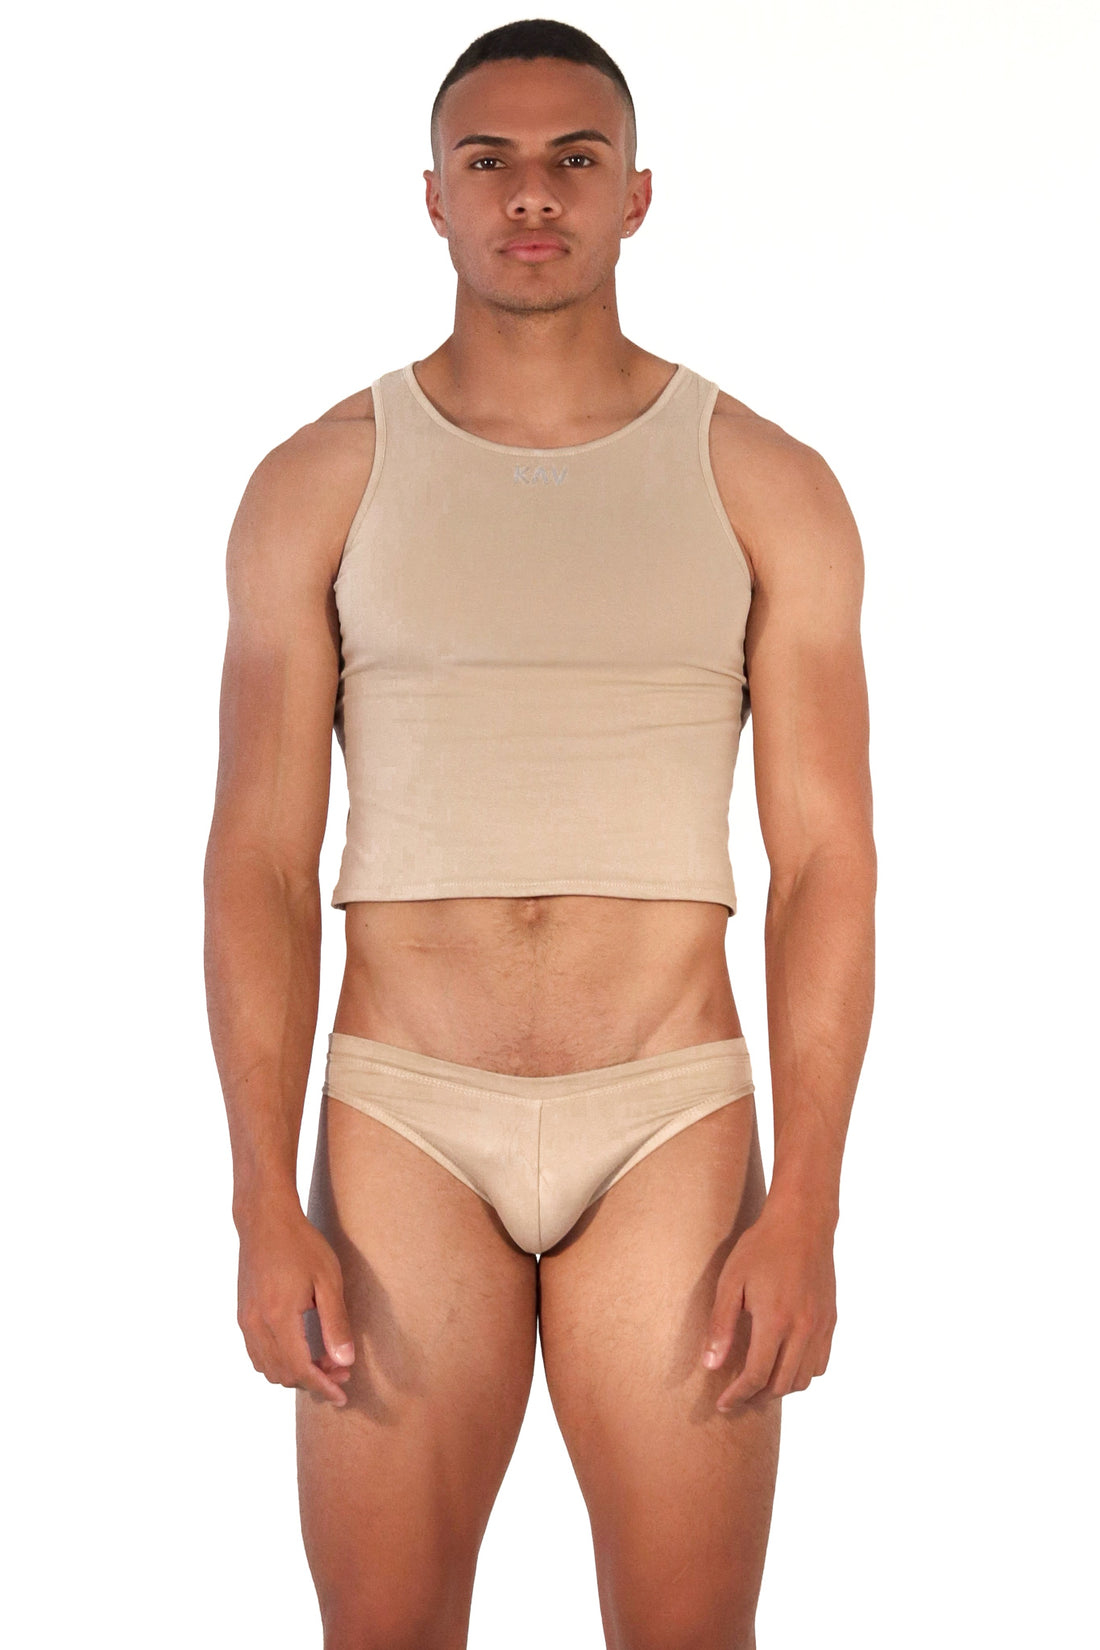 Men Underwear – KAV Wear